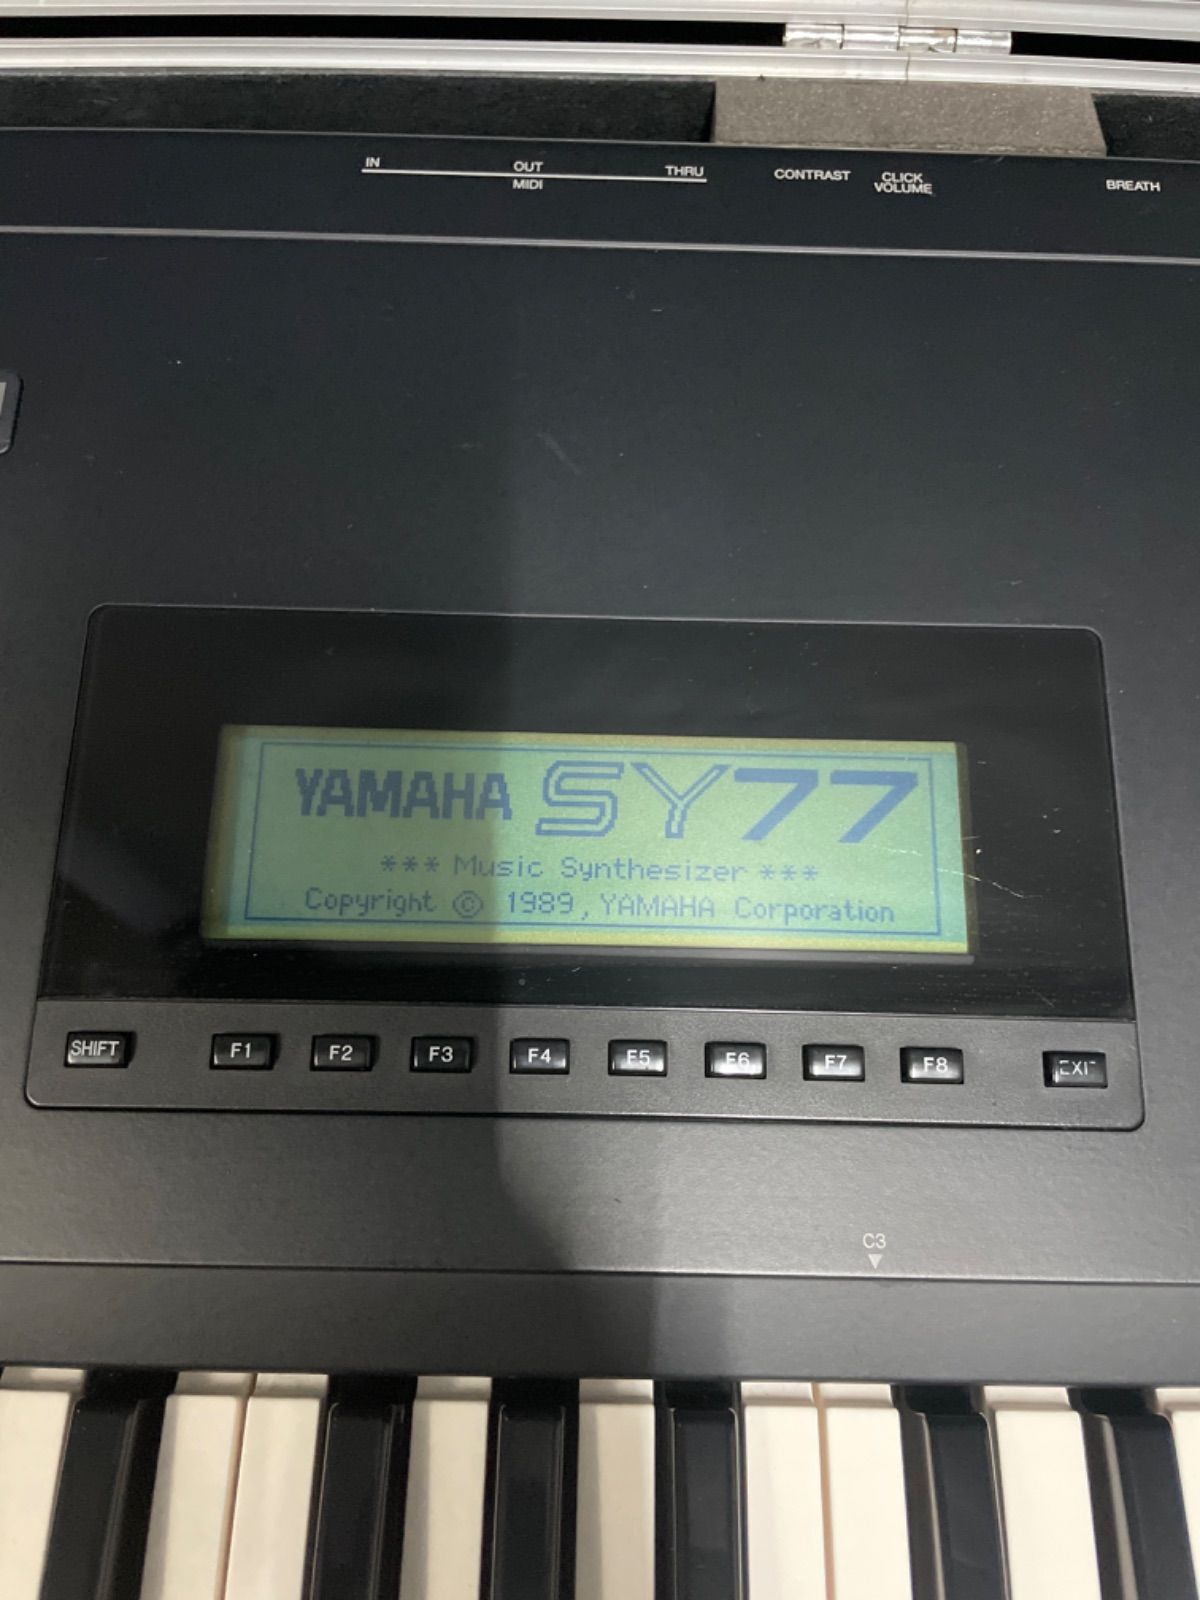 YAMAHA シンセサイザー SY77 ハードケース付き - メルカリ